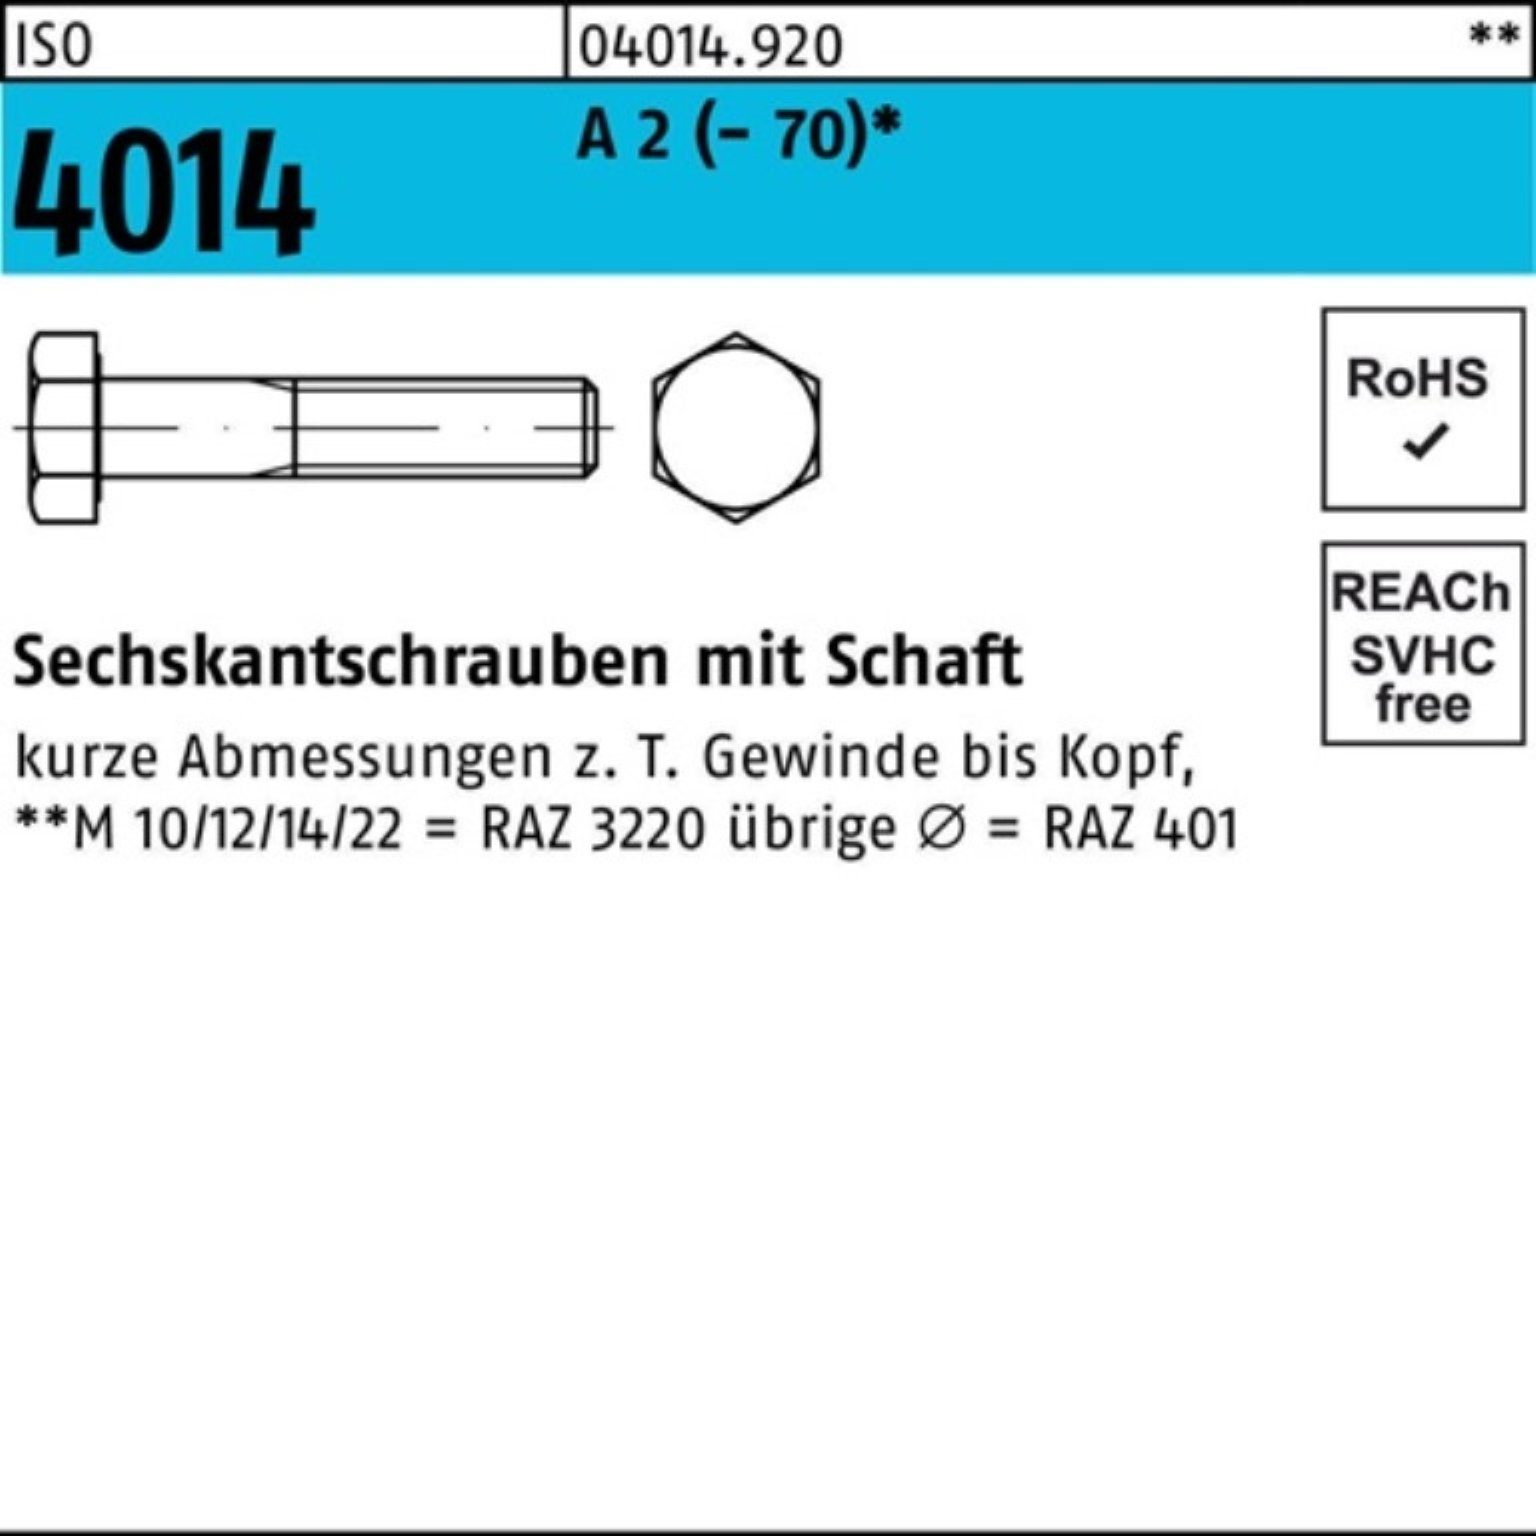 Bufab Sechskantschraube 100er 4014 A (70) Sechskantschraube Schaft Pack 90 25 M18x ISO 2 St